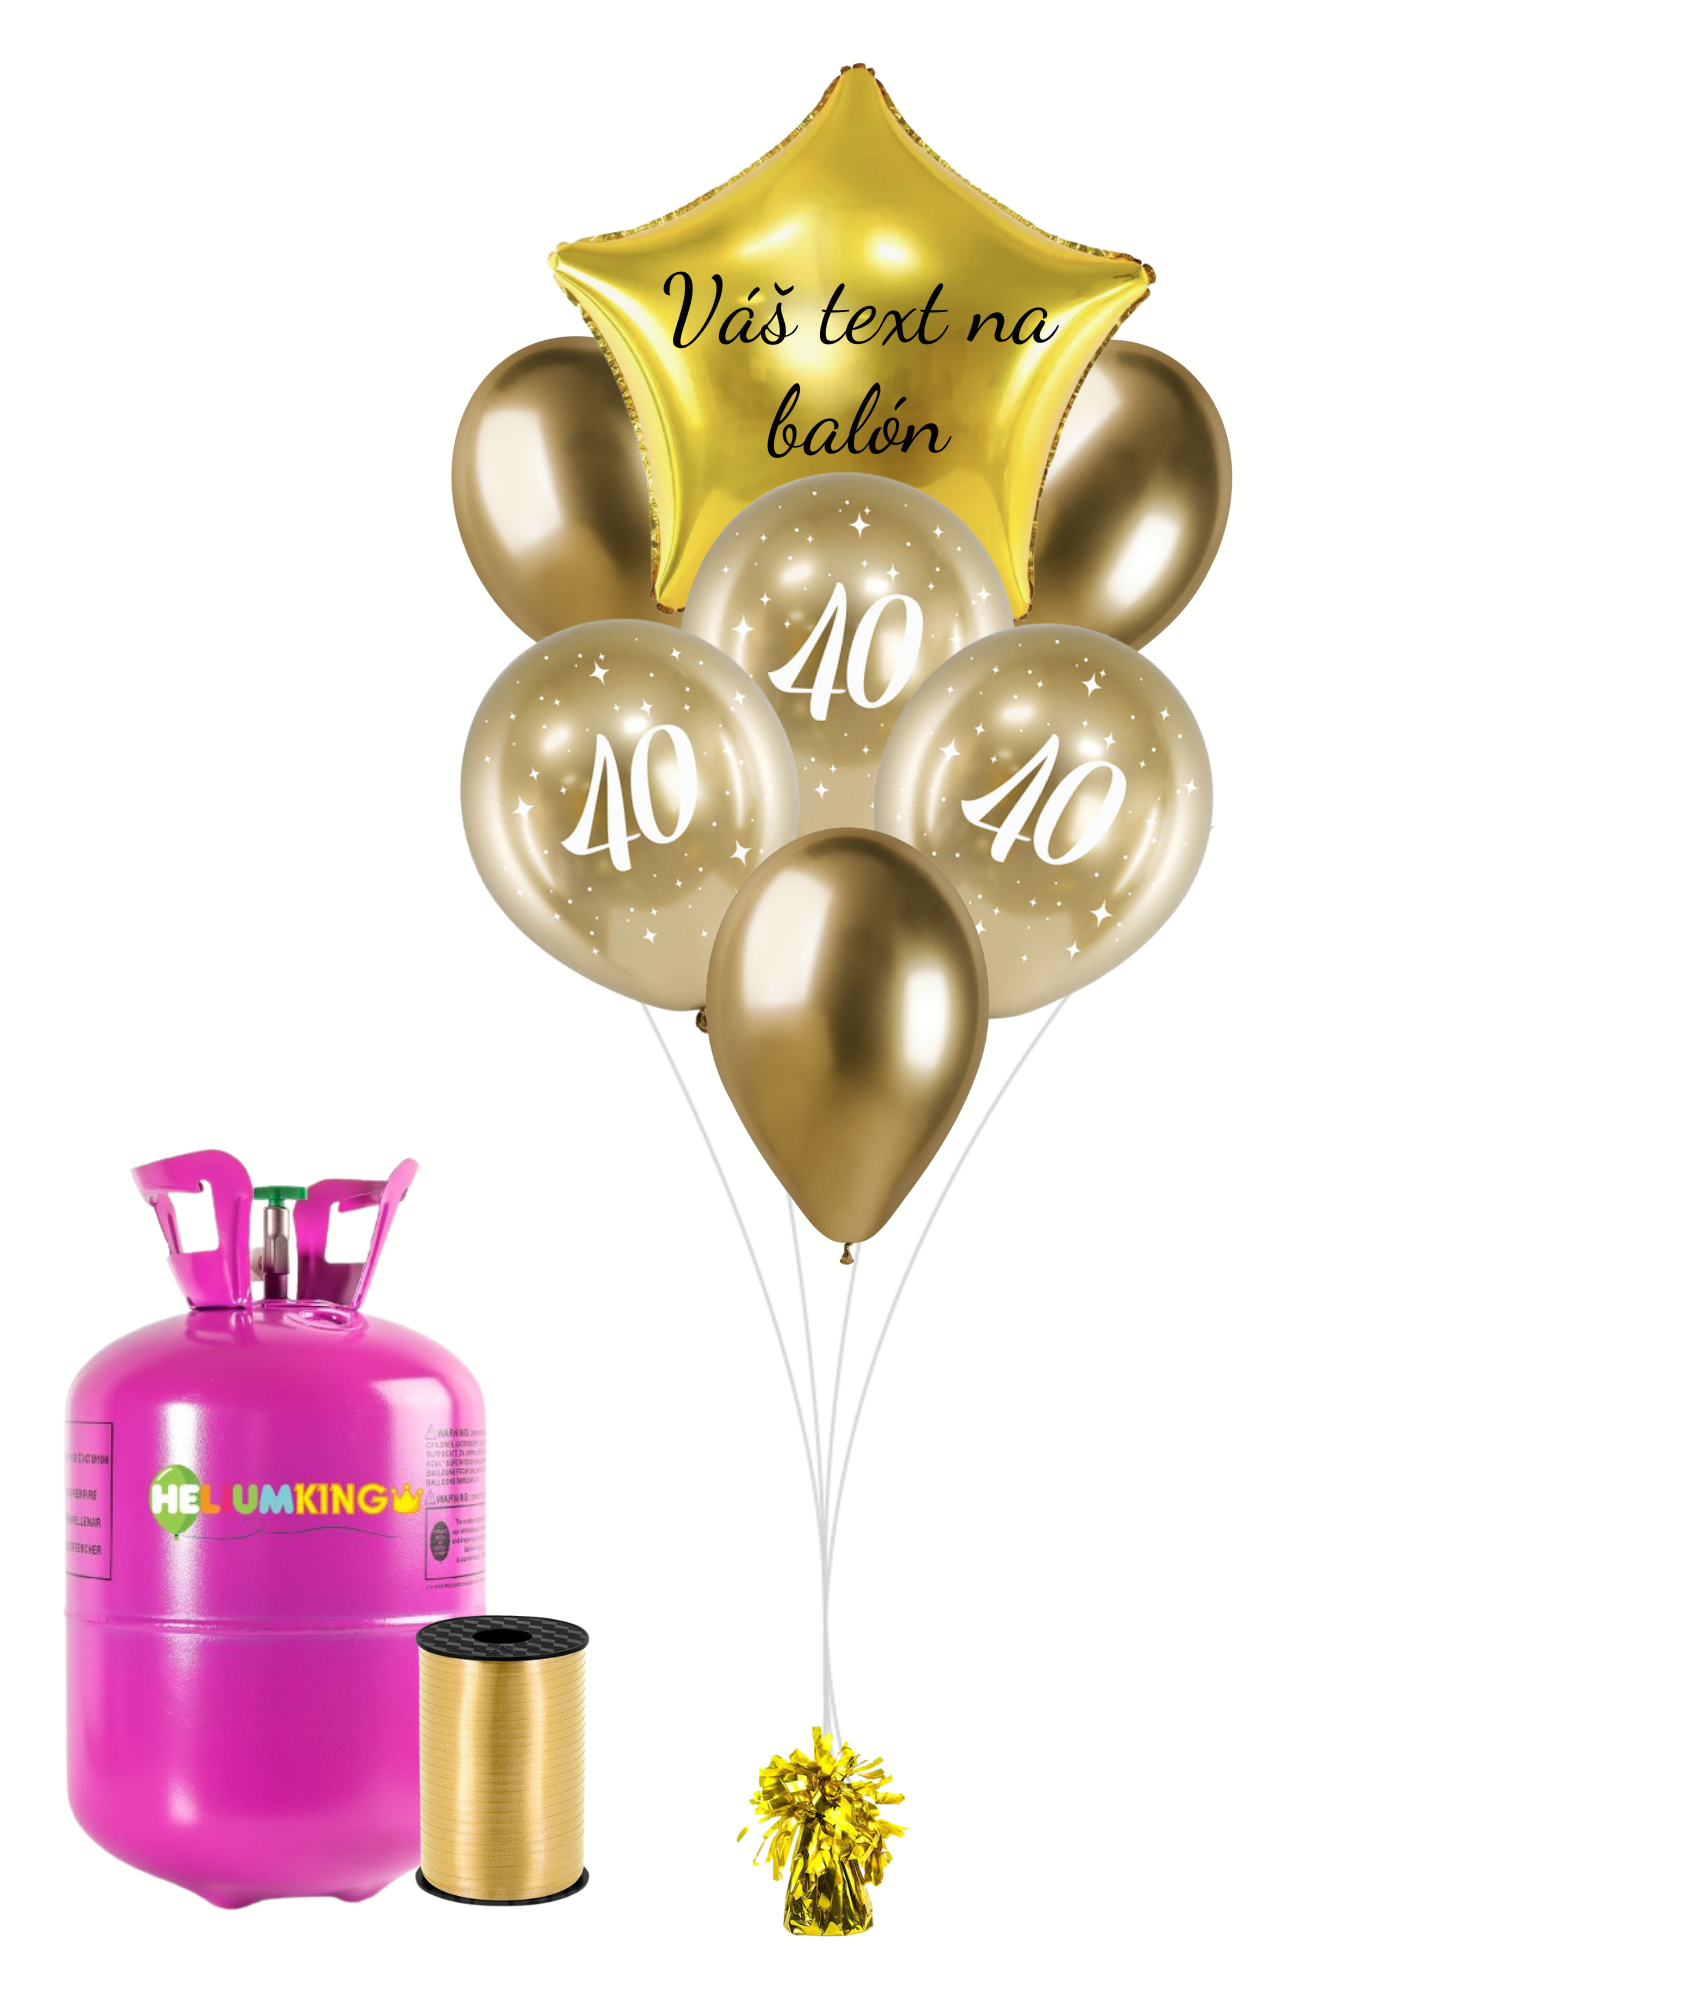 Personal Personalizovaný helium párty set zlatý - 40. narozeniny 13 ks